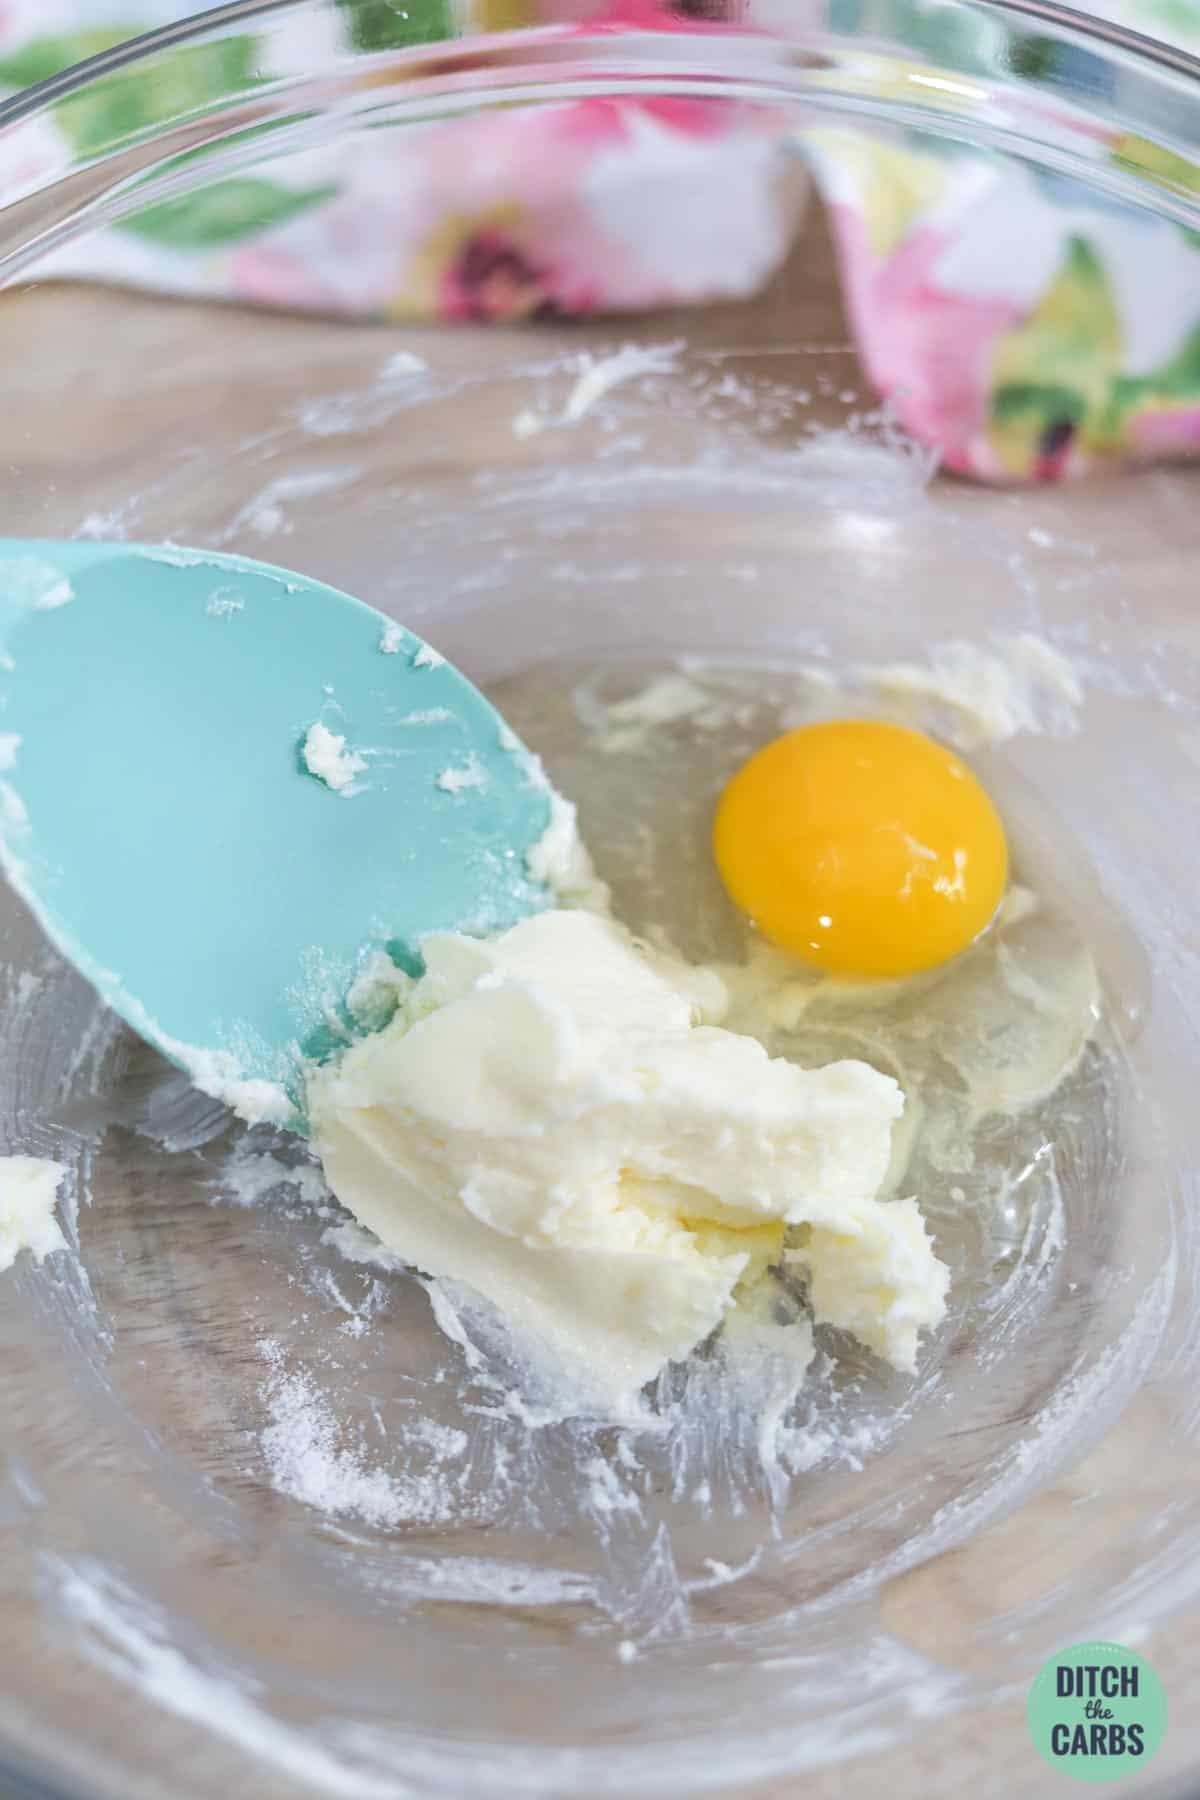 scone dough in a bowl